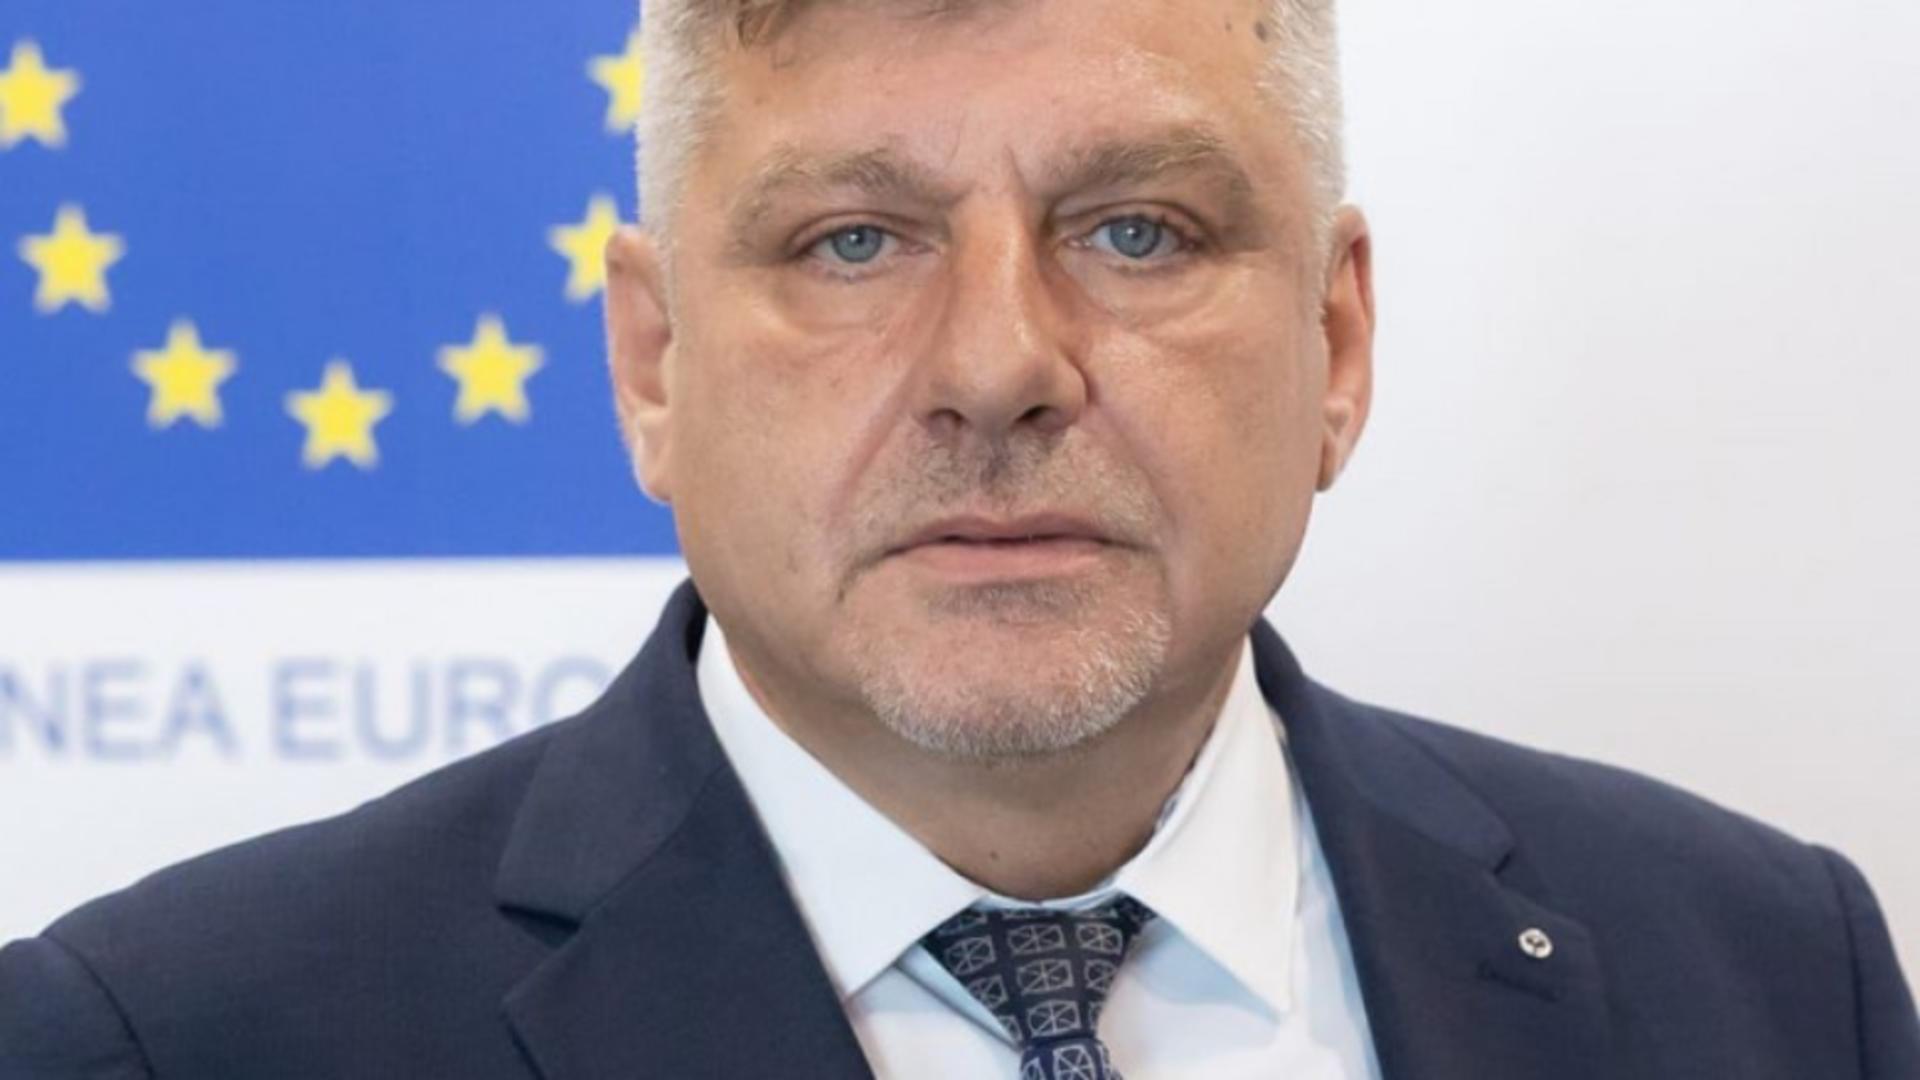 Directorul din Ministerul Proiectelor Europene care ar fi vândut subiectele la un concurs de angajare, trimis in judecată